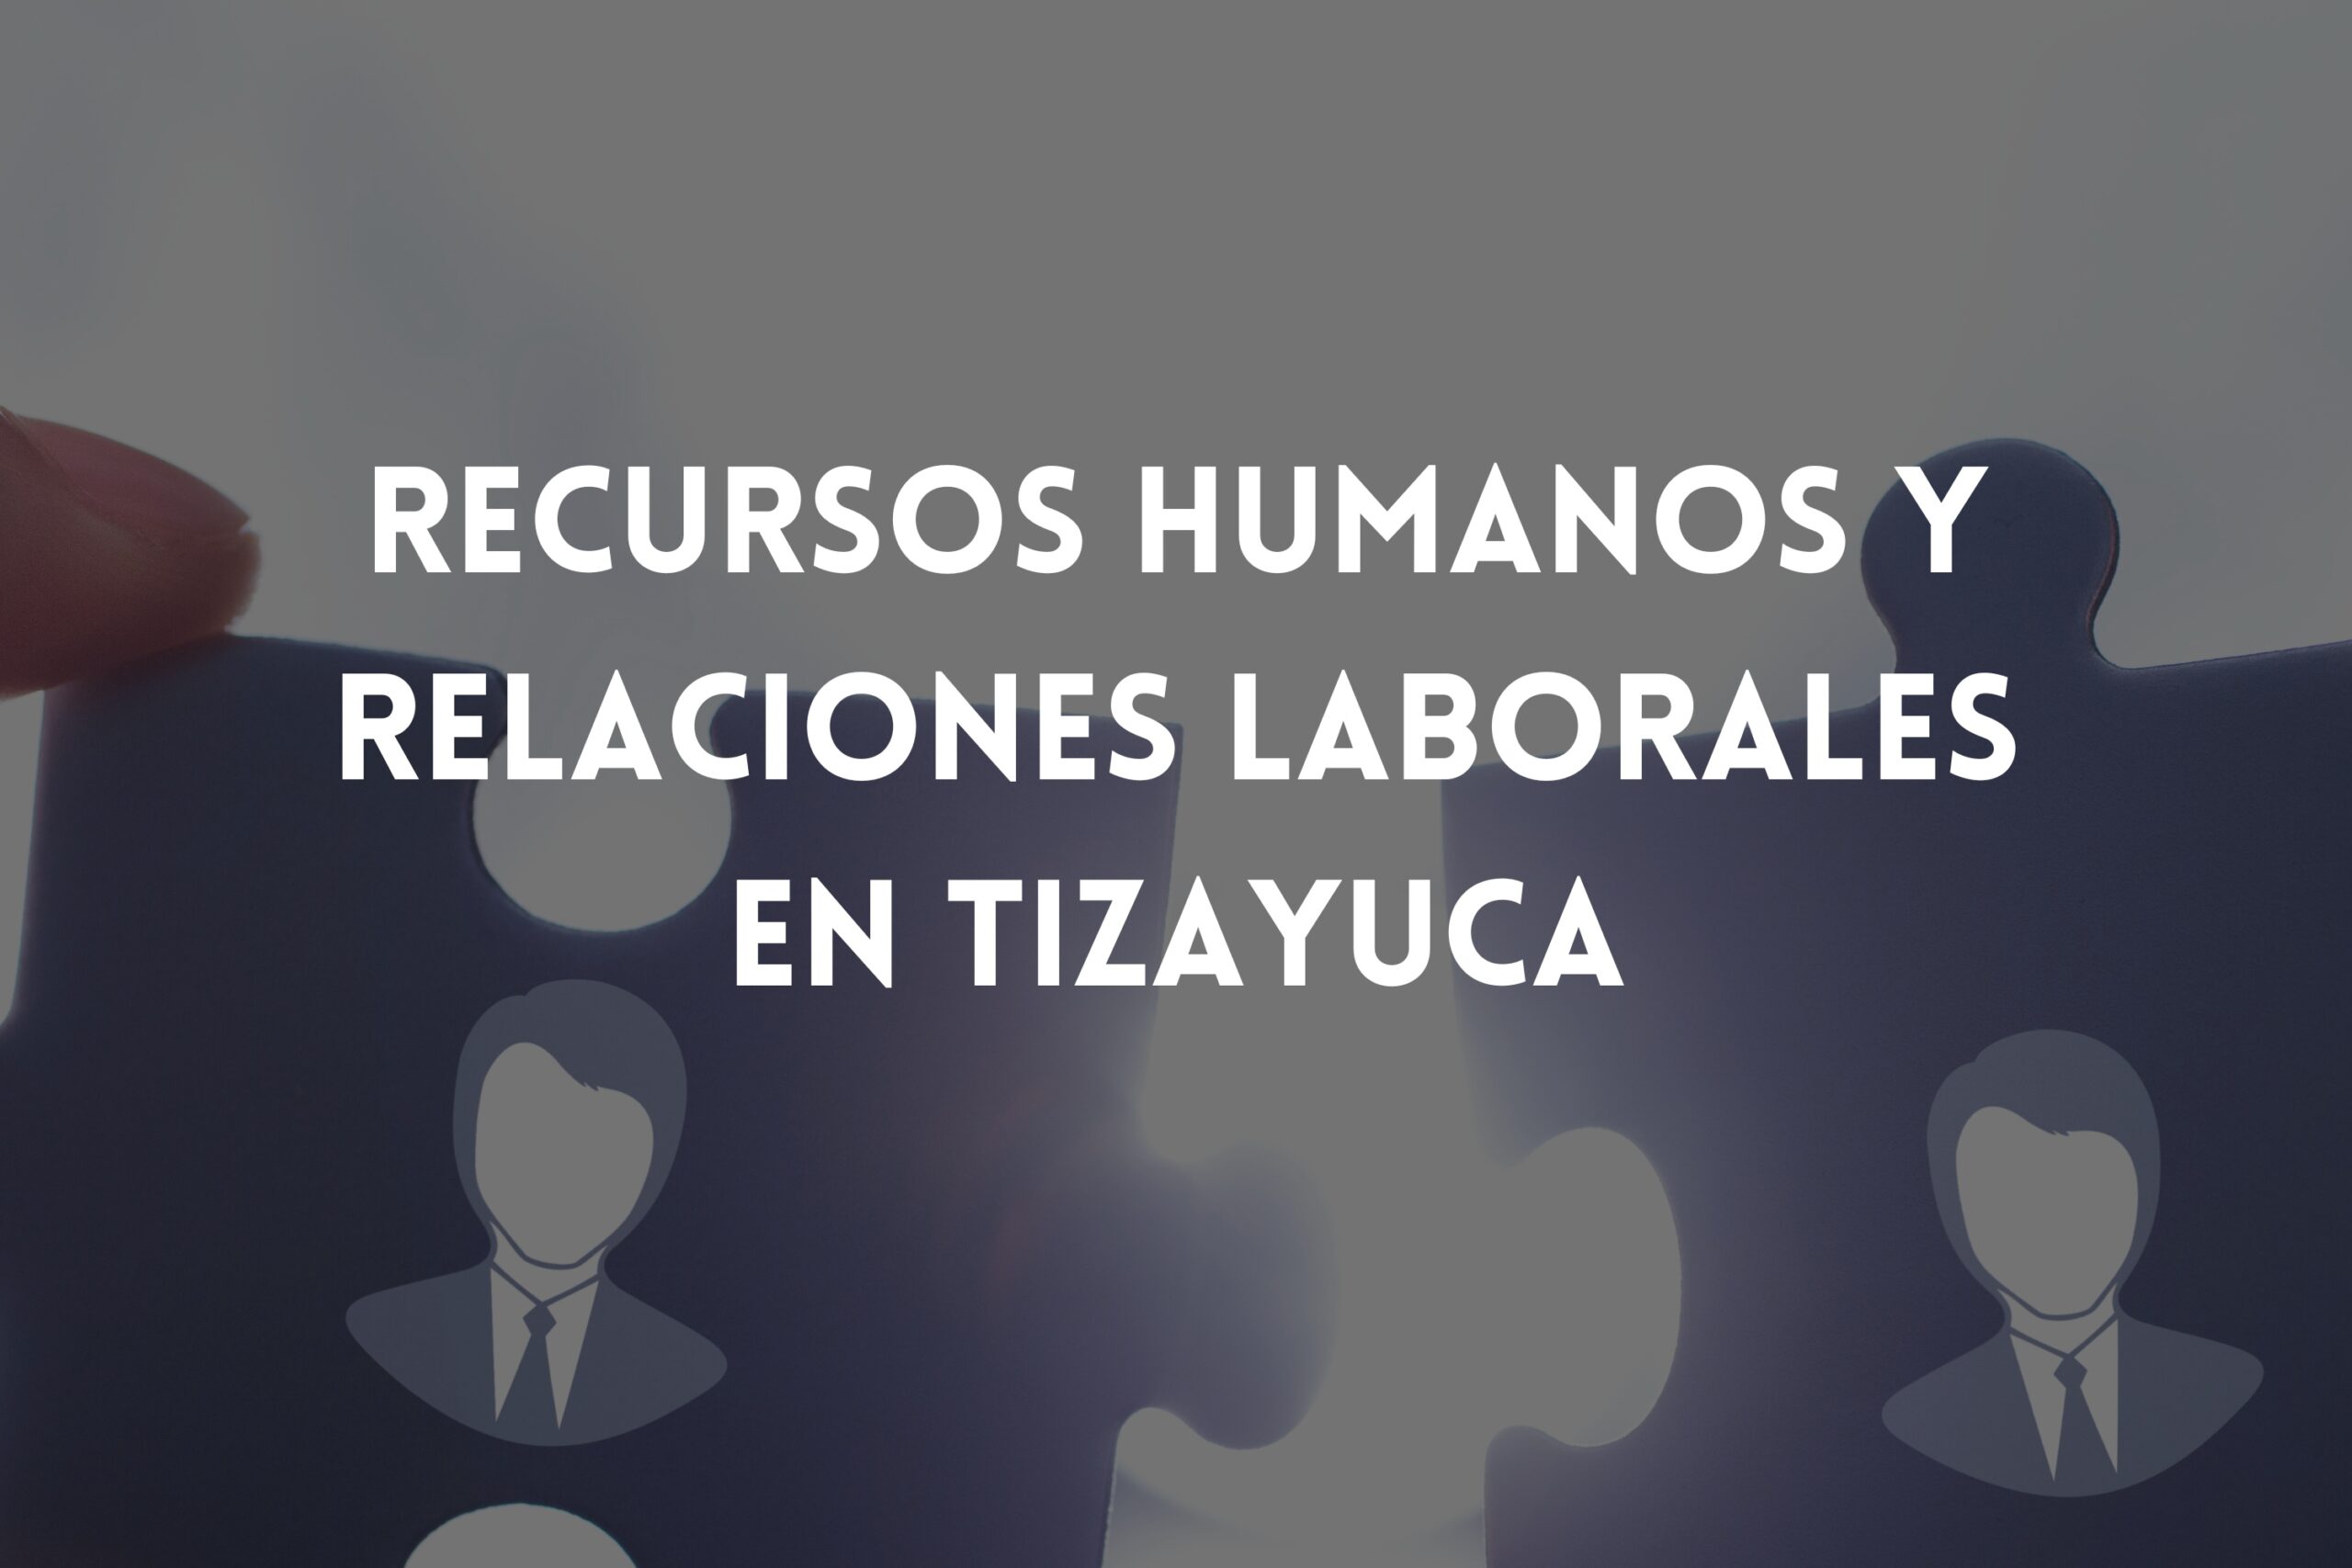 Recursos humanos y relaciones laborales en tizayuca